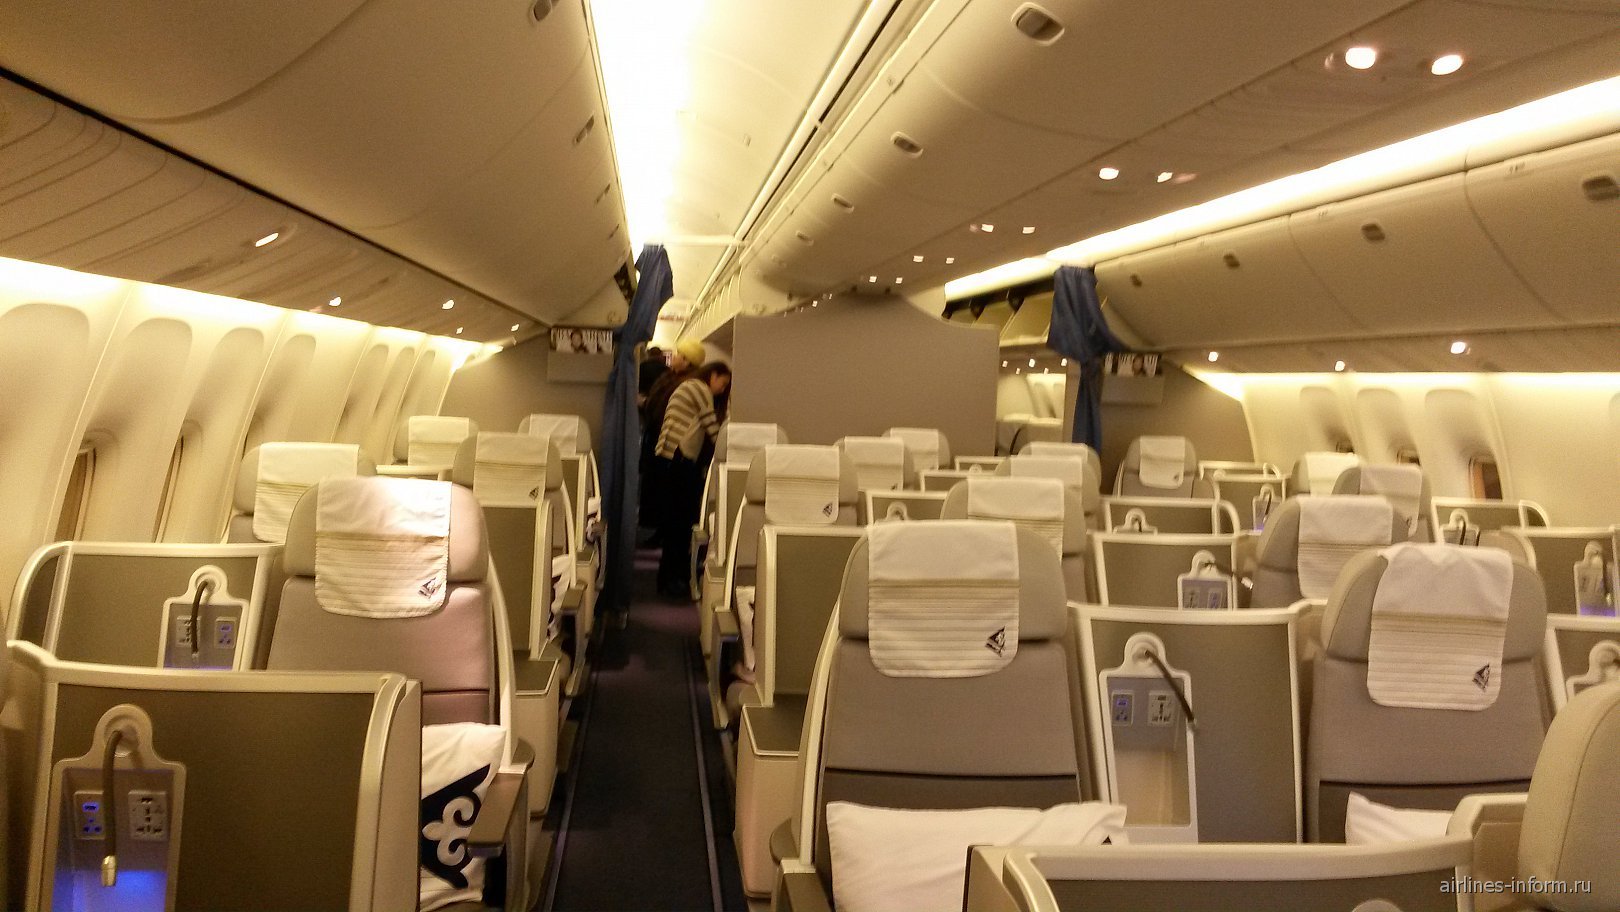 Air Astana Boeing 767 Business class